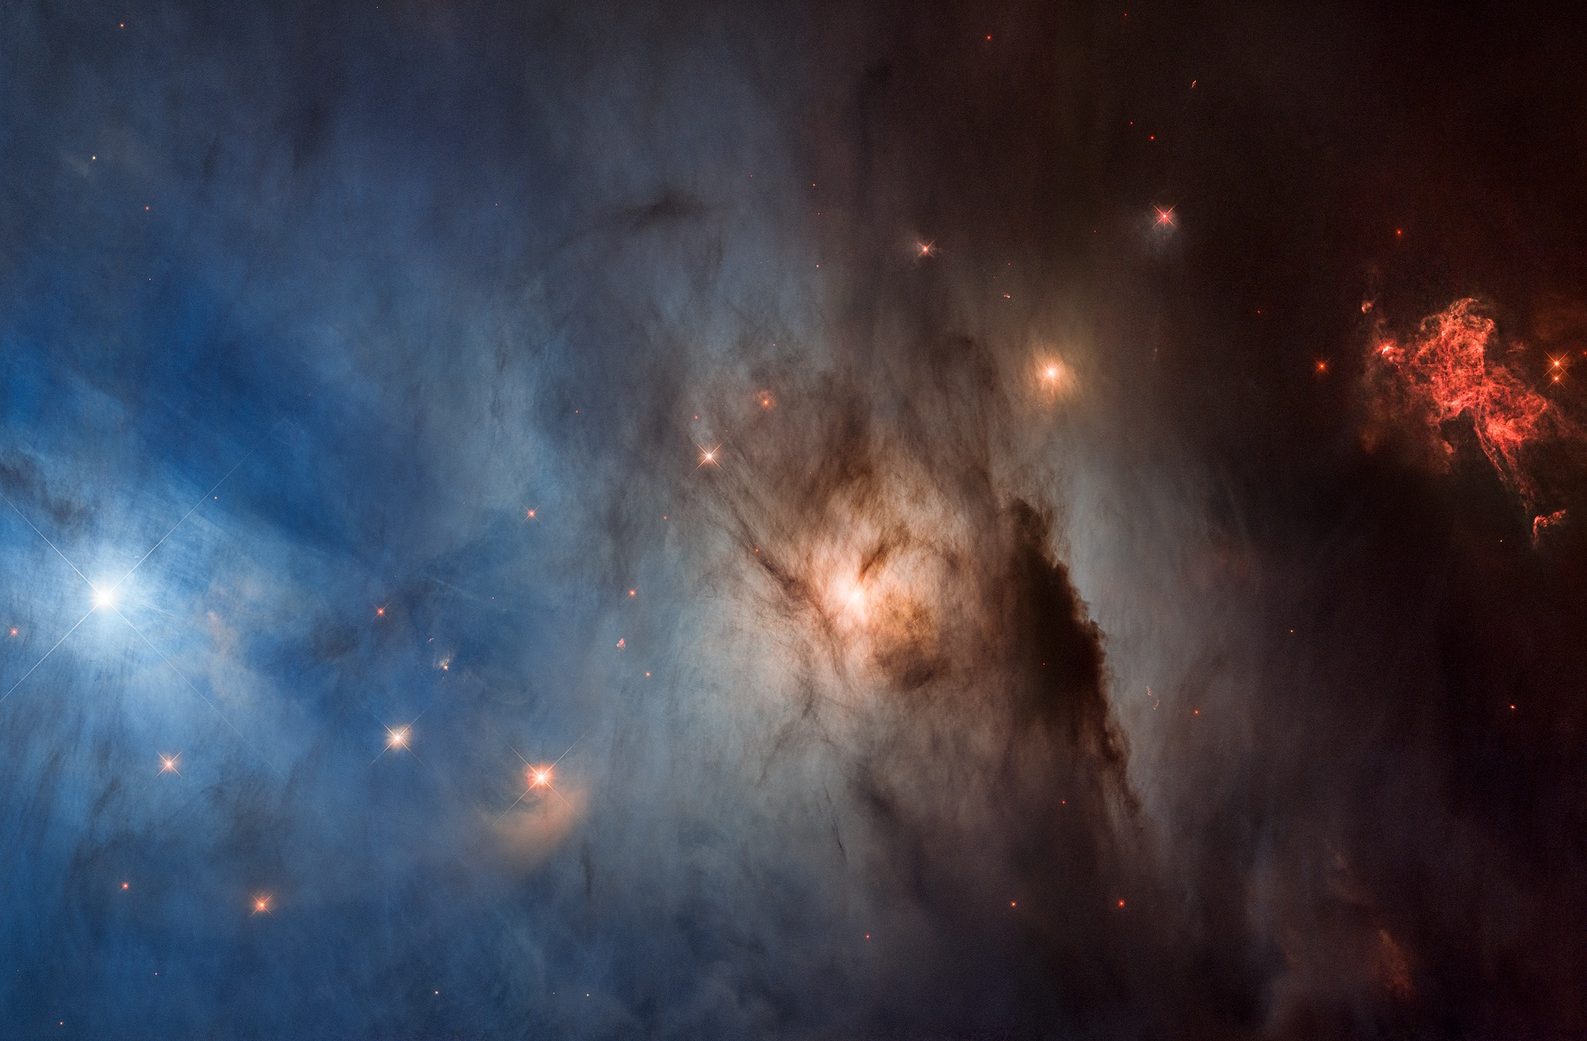 Star-forming region NGC 1333. NASA's Goddard Space Flight Center.